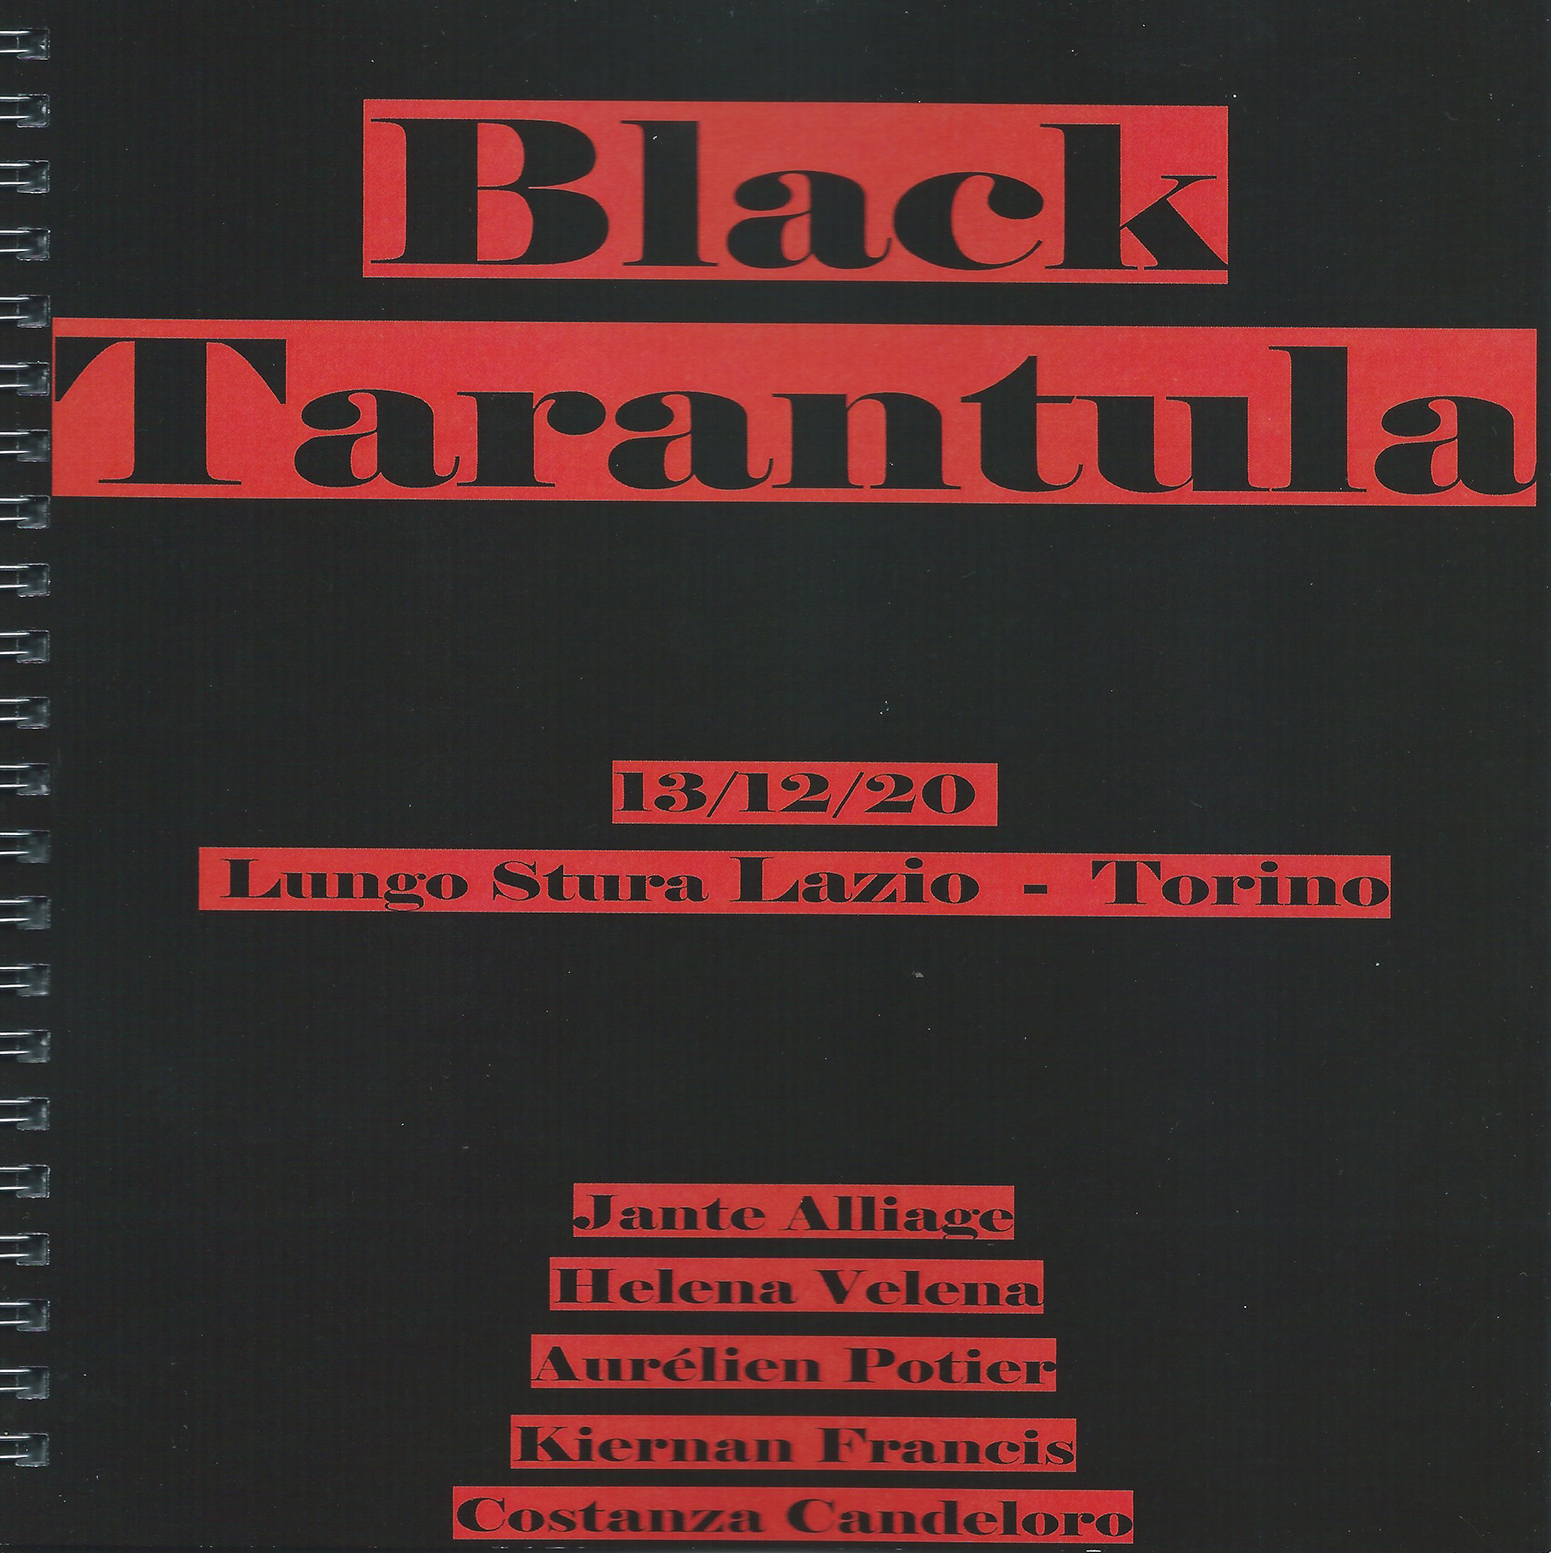 Black-Tarantula-Lungo-Stura-Lazio-Torino-mrzb